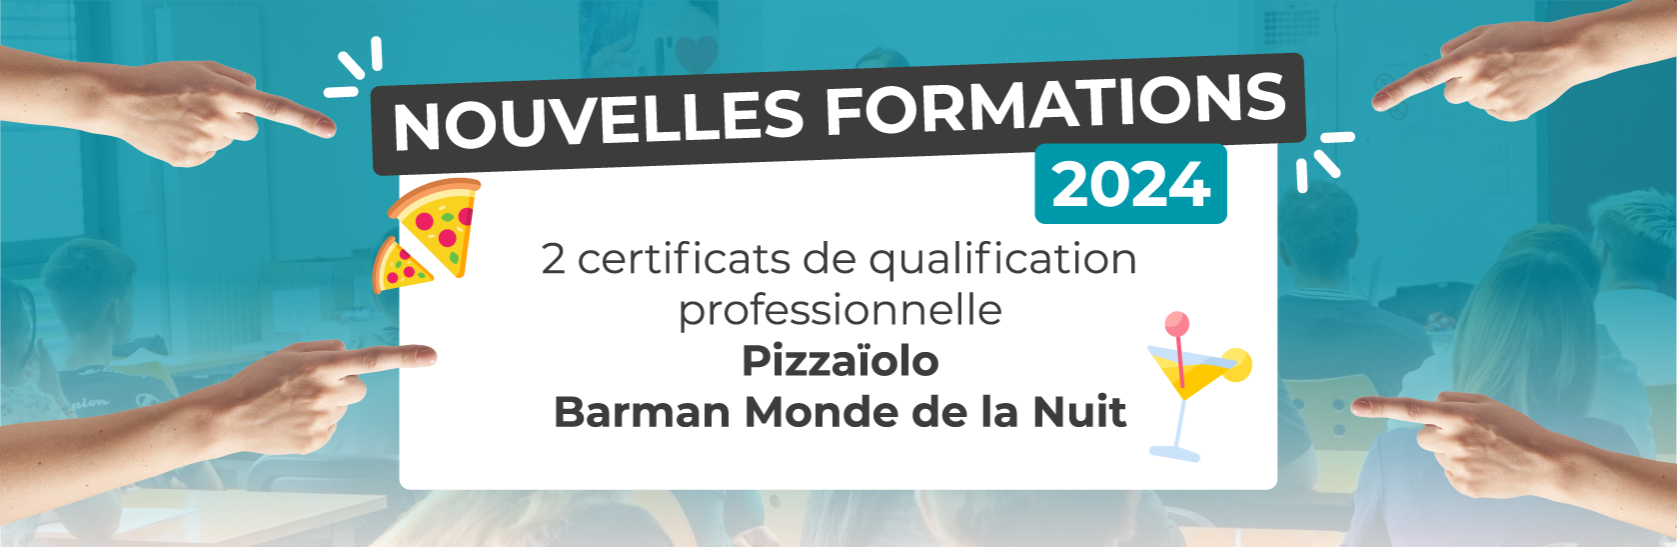 Nouvelles formations certificats de spécialisation professionnelle pizzaïolo et barman monde de la nuit